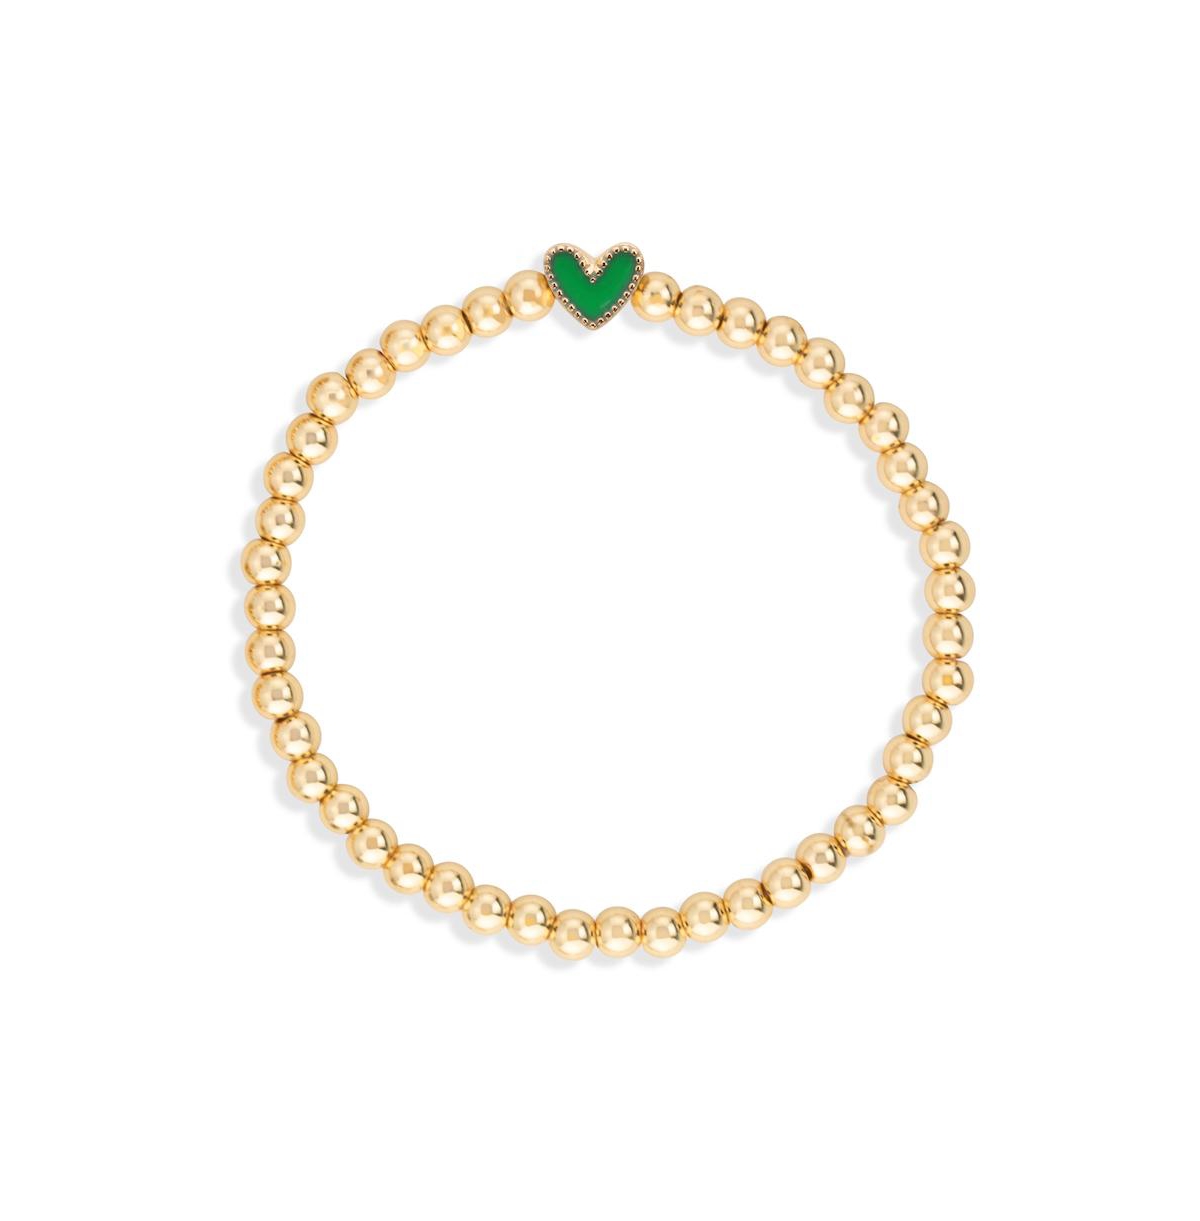 Luca + Danni Heart Stretch Women's Bracelet in Green